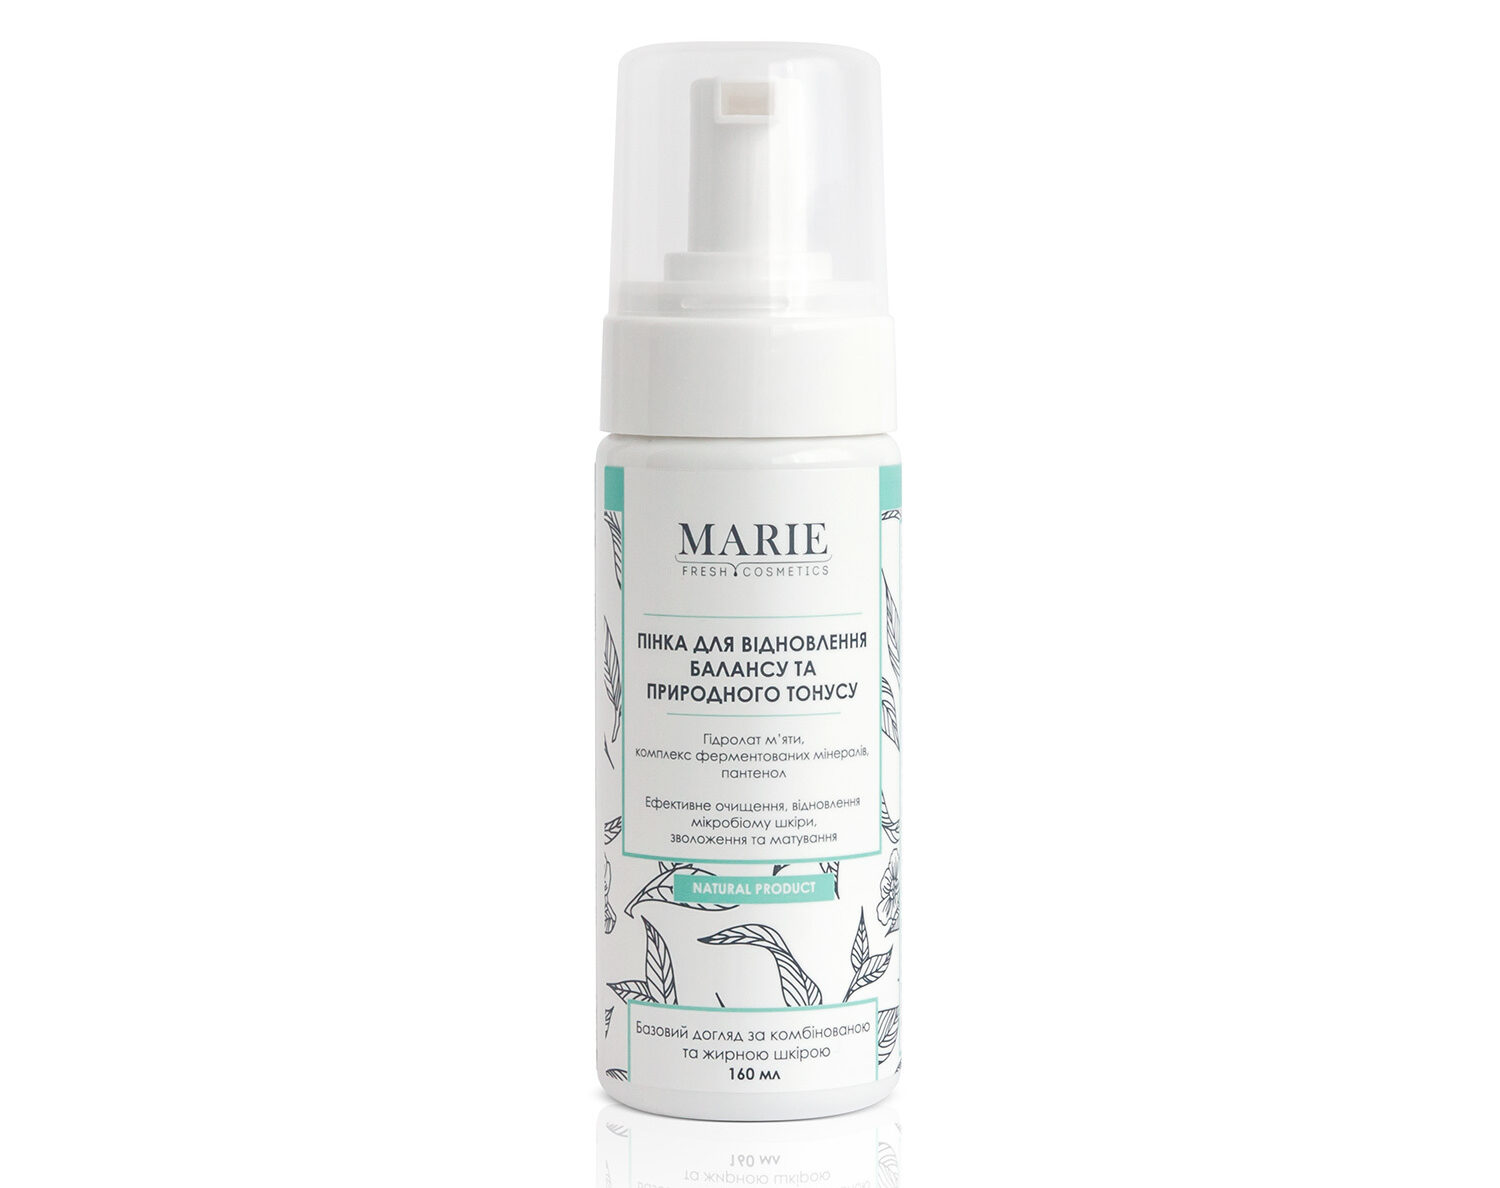 Marie Fresh Cosmetics, пенка для восстановления баланса и естественного тонуса 